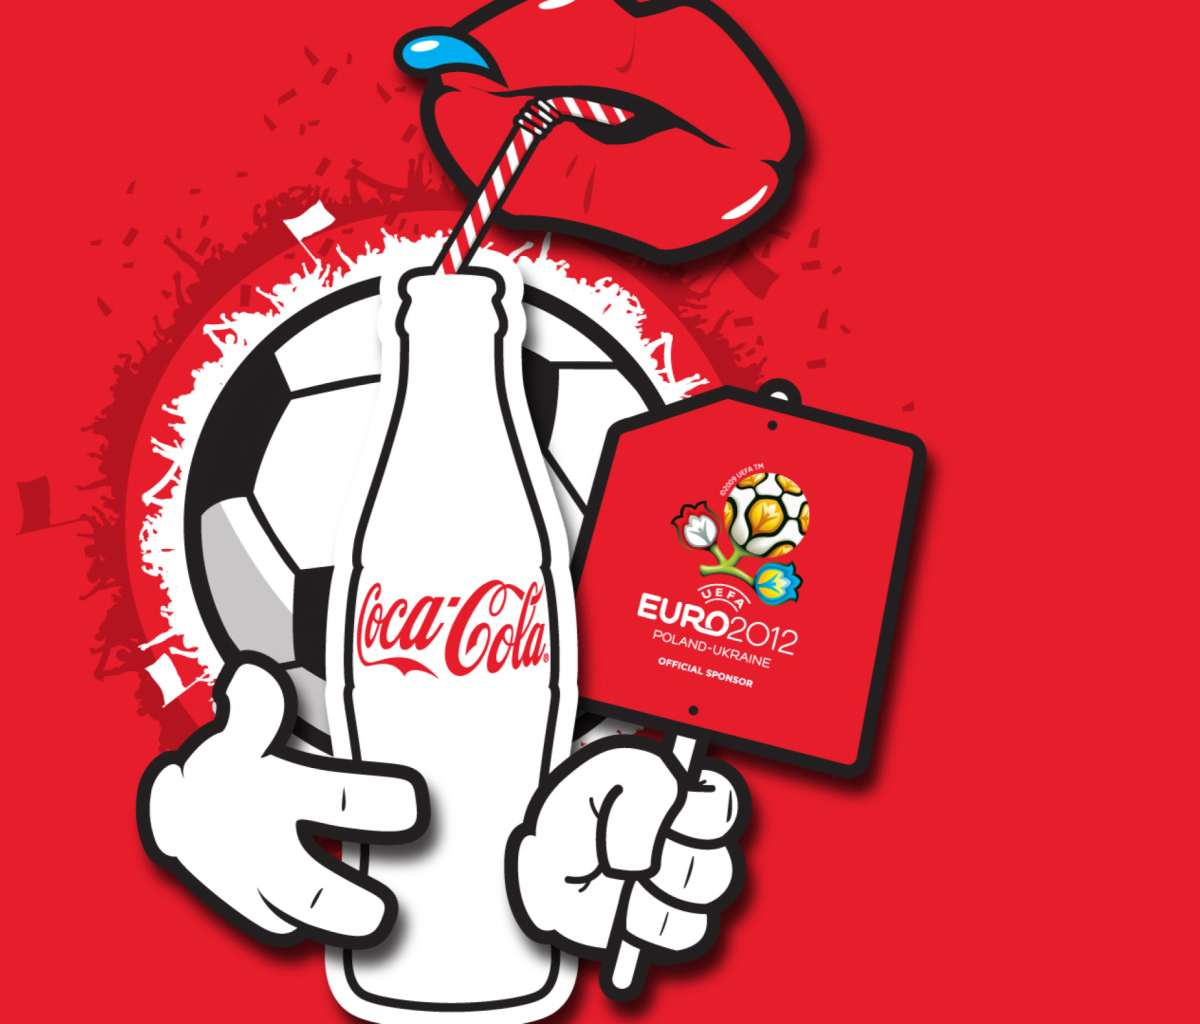 Fondo de pantalla Coca Cola & Euro 2012 full hd 1200x1024